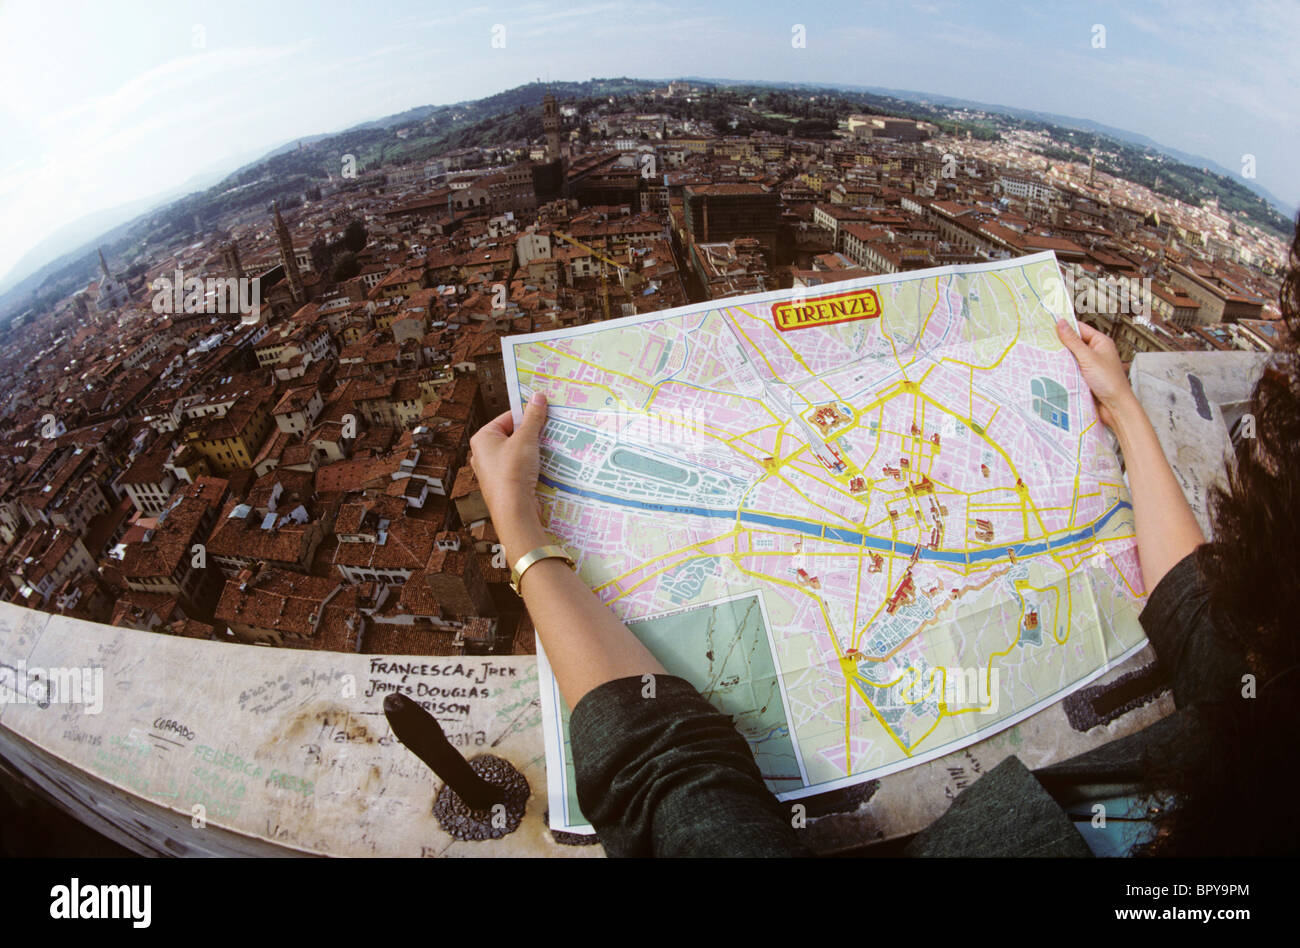 Fisheye lente vista aérea de la ciudad de Florencia como dama encuestas el paisaje urbano con un mapa turístico. Foto de stock